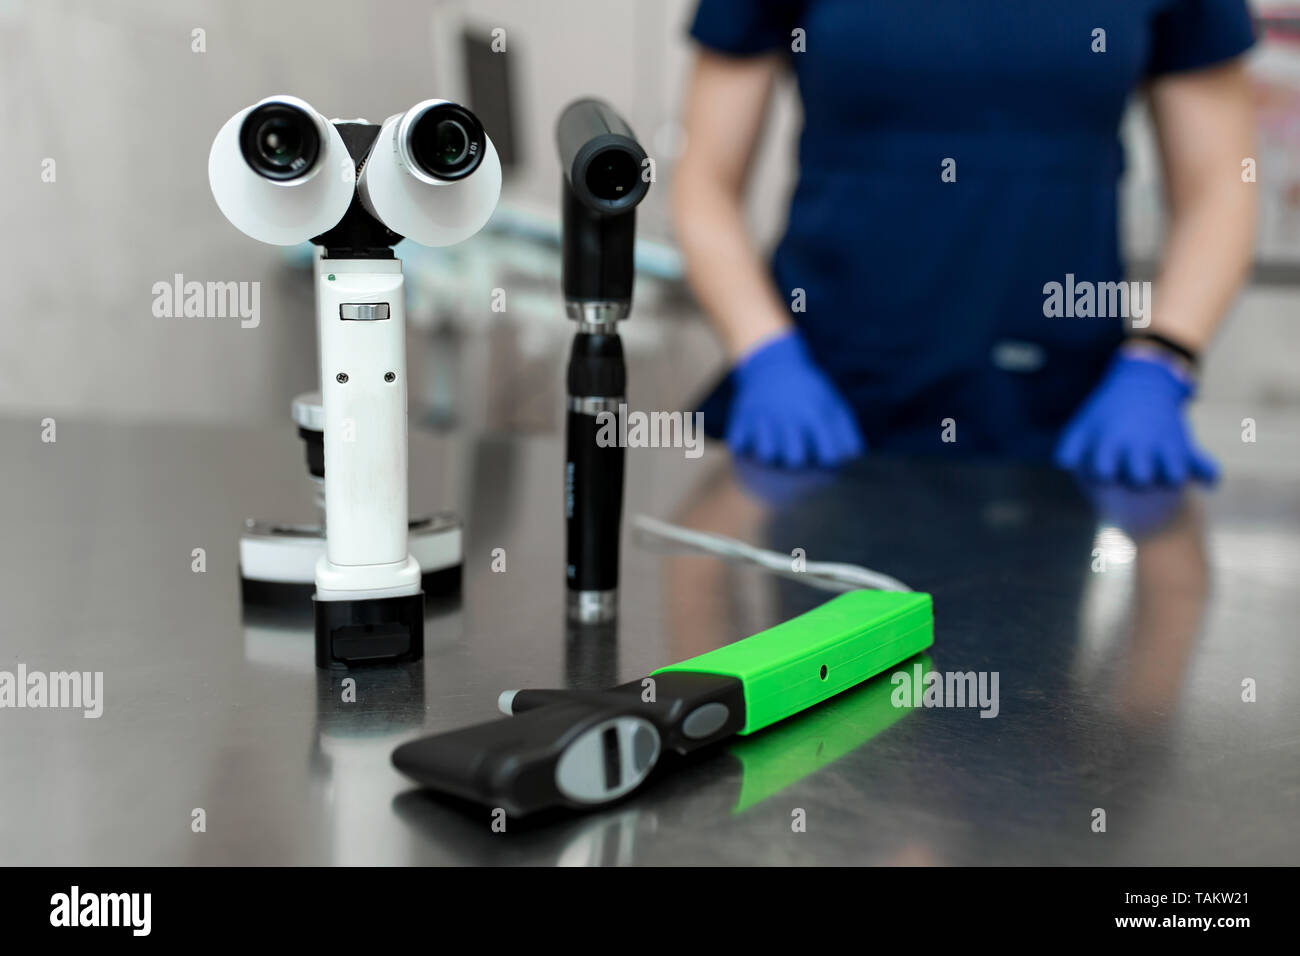 Professionnel médical ophtalmologiste des outils comme lampe à fente, tonomètre ophthalmoscope, poser sur la table de métal. Banque D'Images